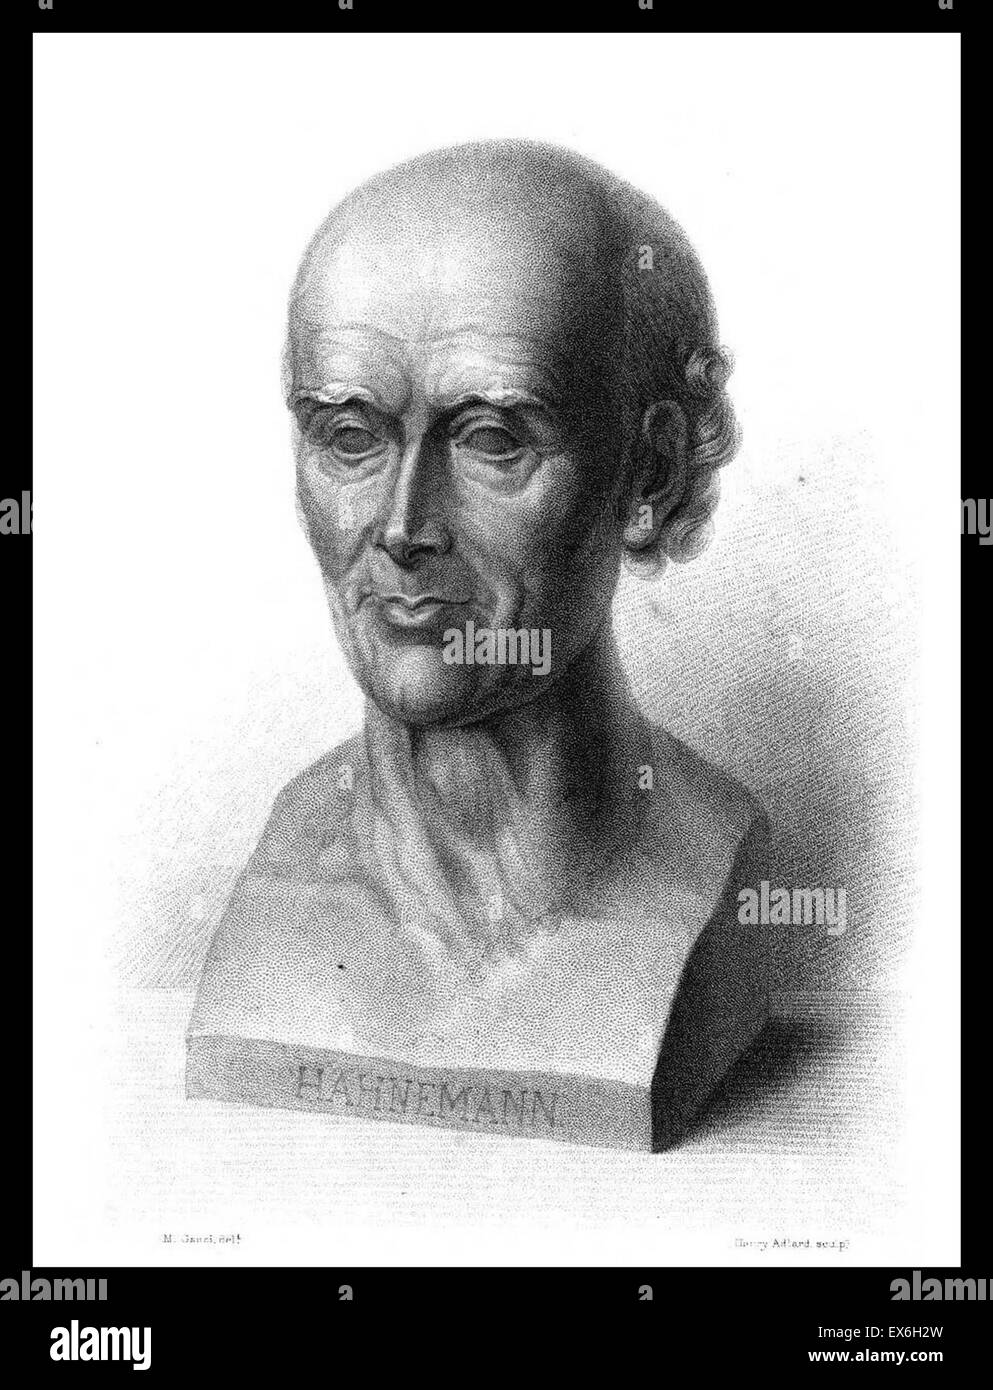 Samuel Hahnemann (1755-1843) qui était un médecin allemand et le fondateur de l'homéopathie. Imprimer satirique par Ch. Nanteuil intitulée "méthode homoeopathique (similia similibus)' Banque D'Images